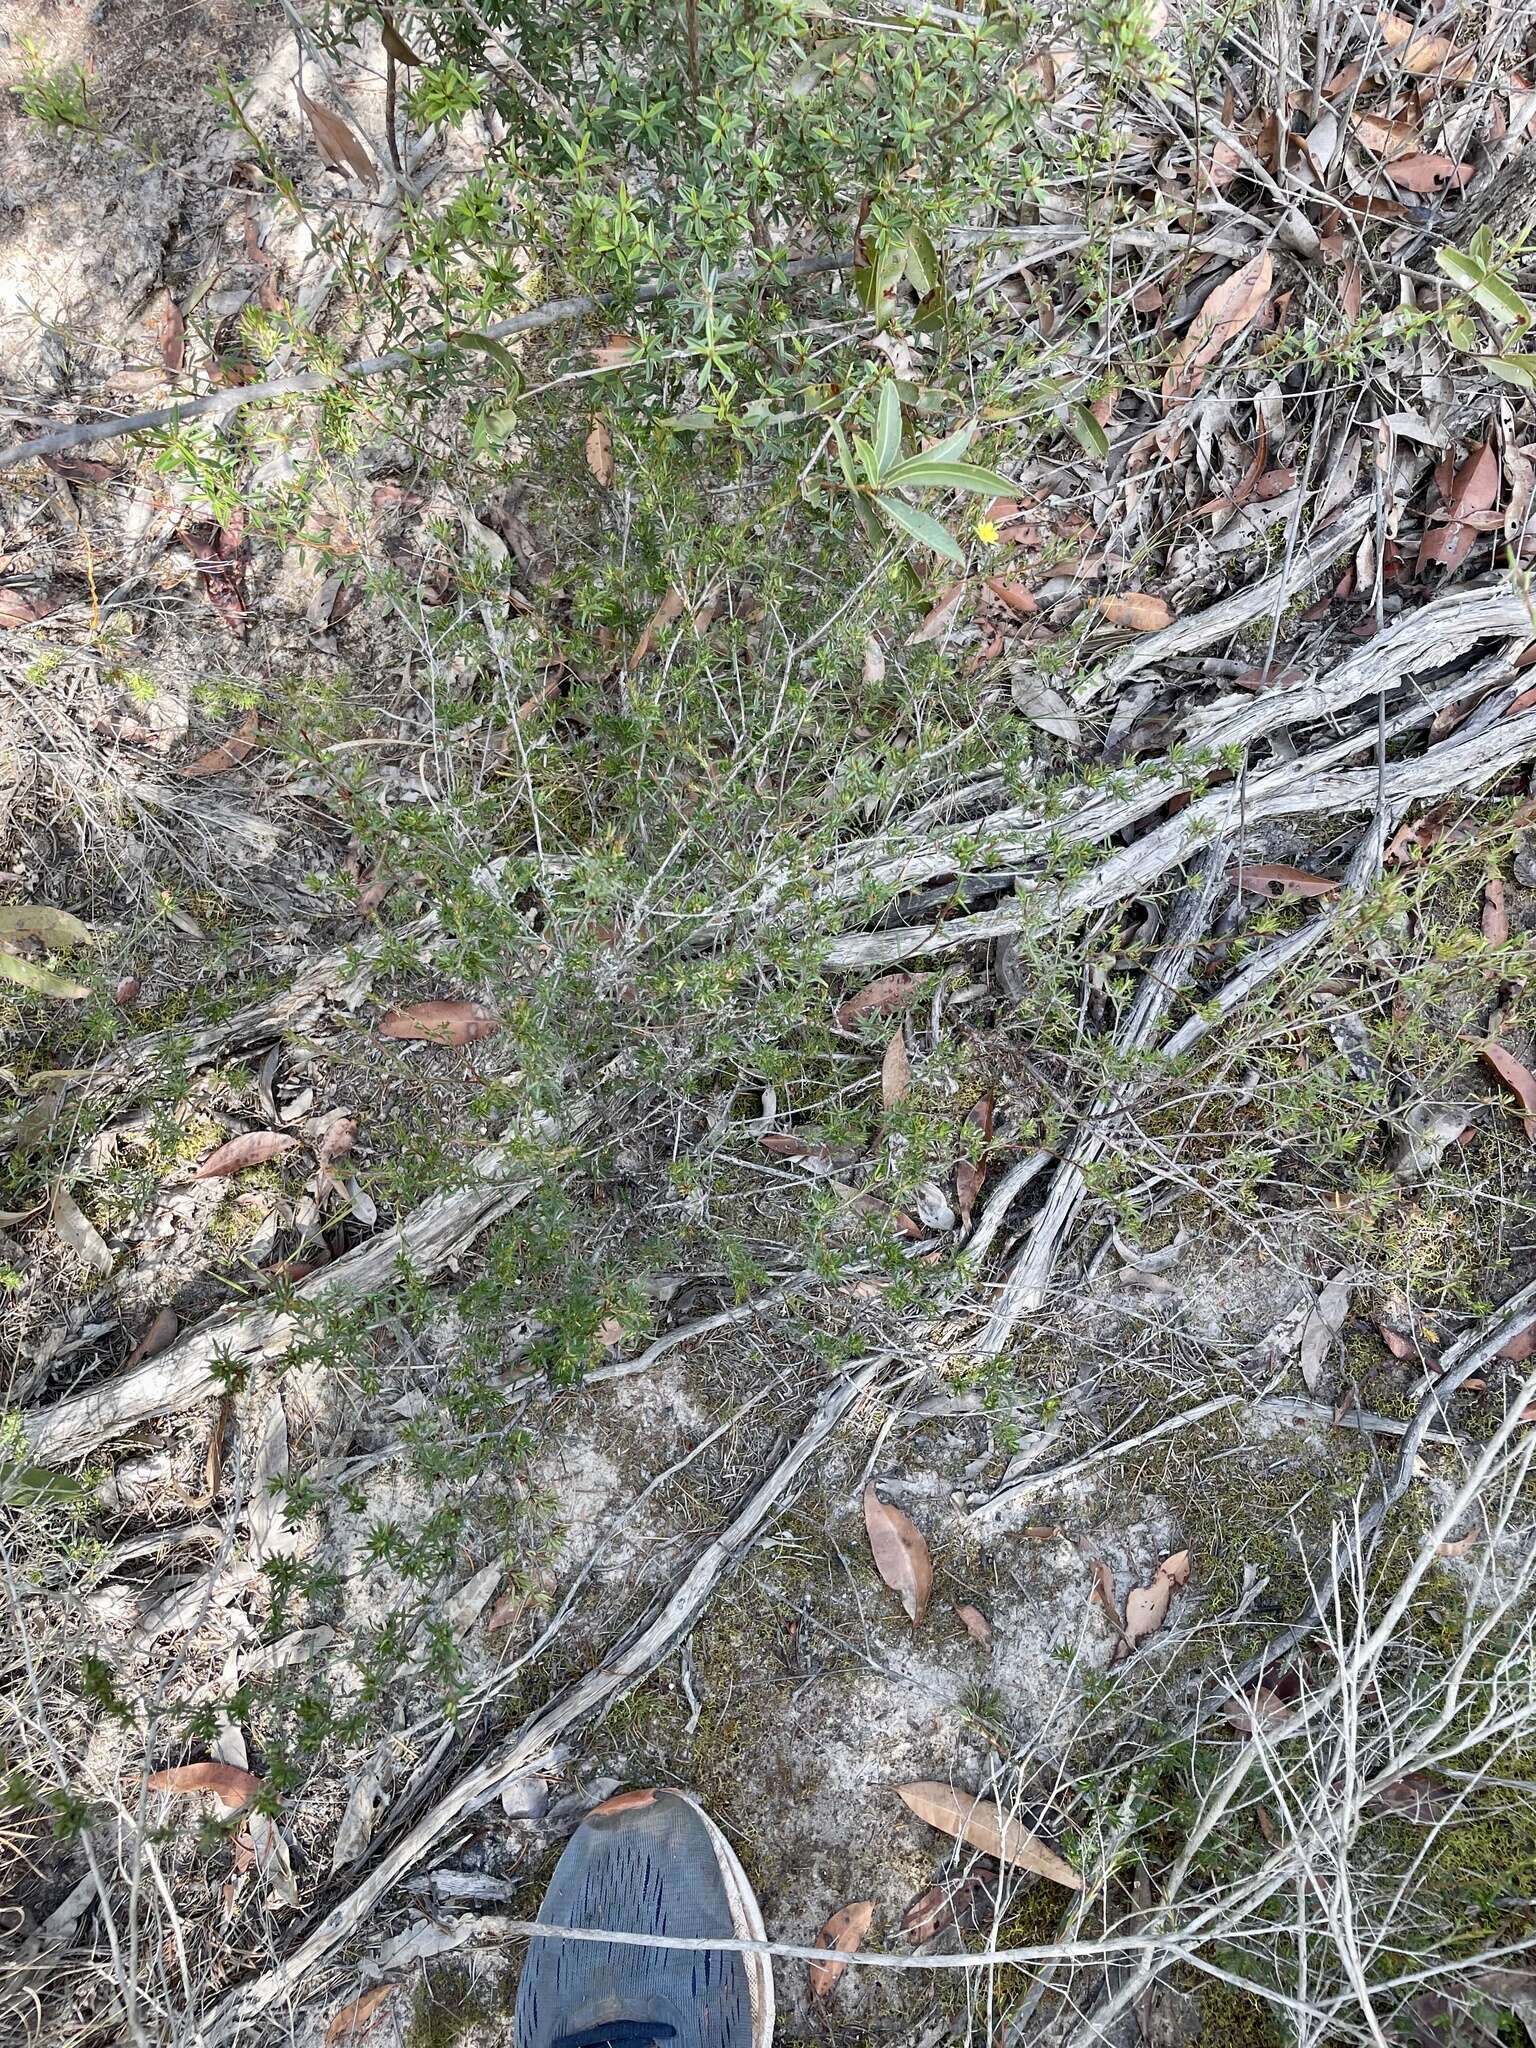 Image of Hibbertia acicularis (Labill.) F. Müll.